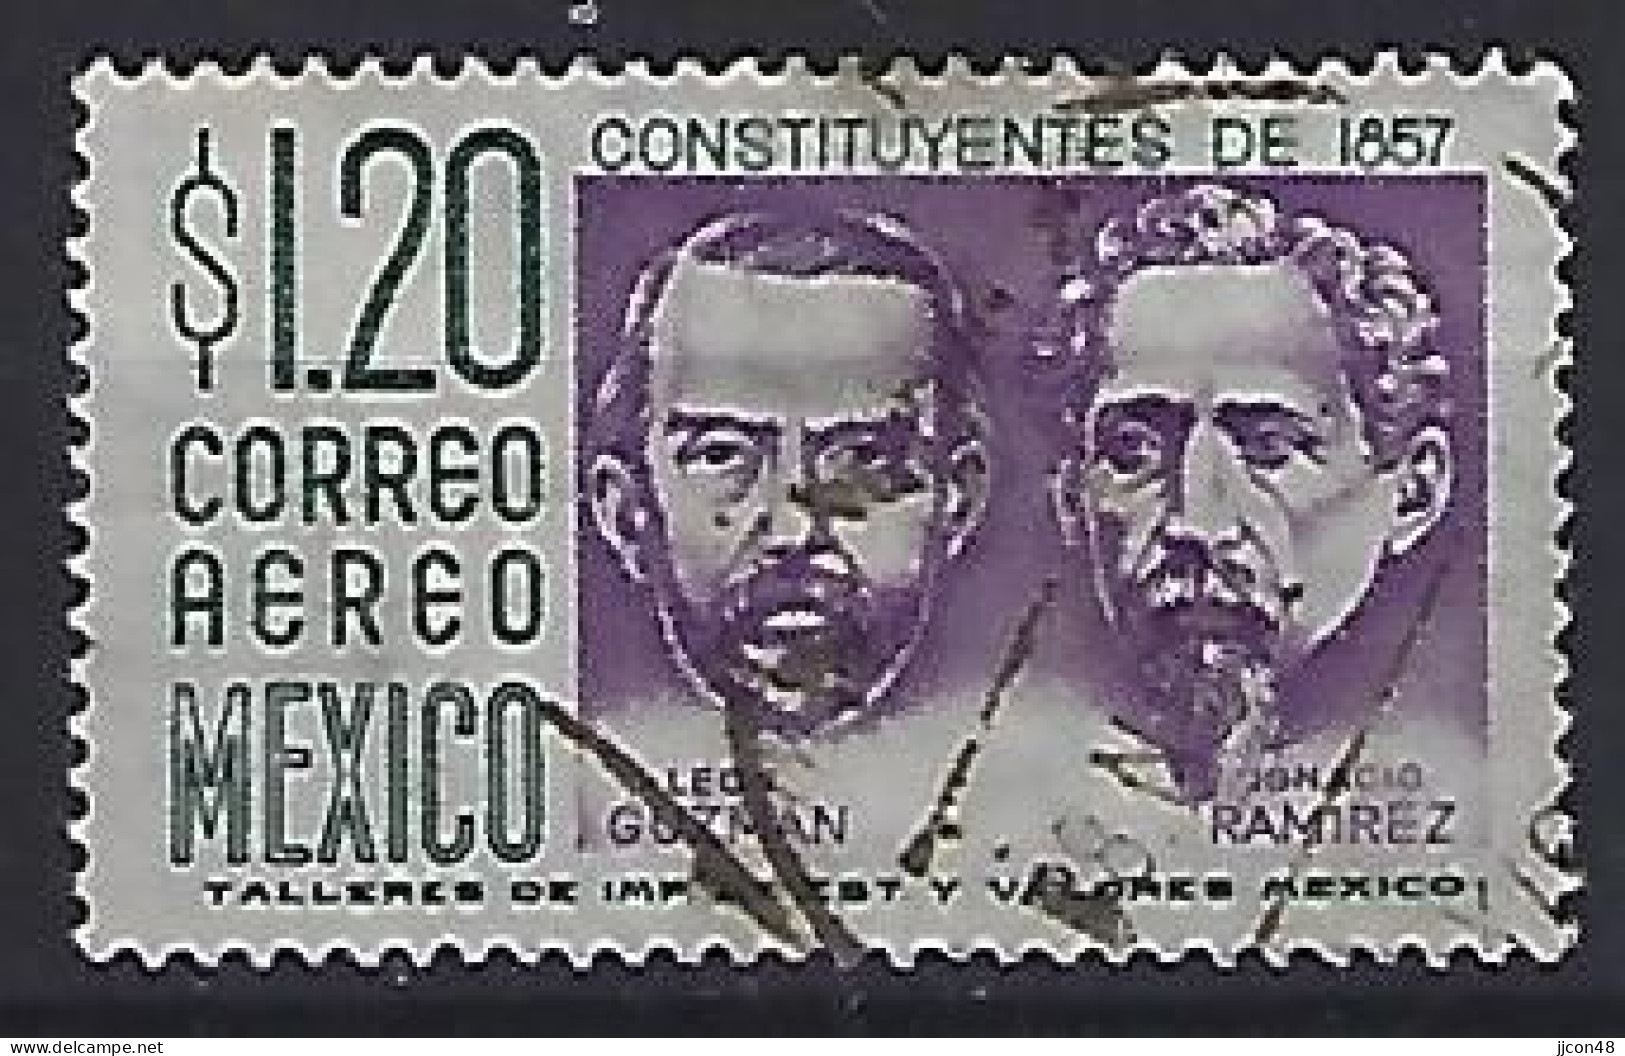 Mexico 1956-75  Einheimische Bilder (o) Mi.1066 X (issued 1956) - Mexico